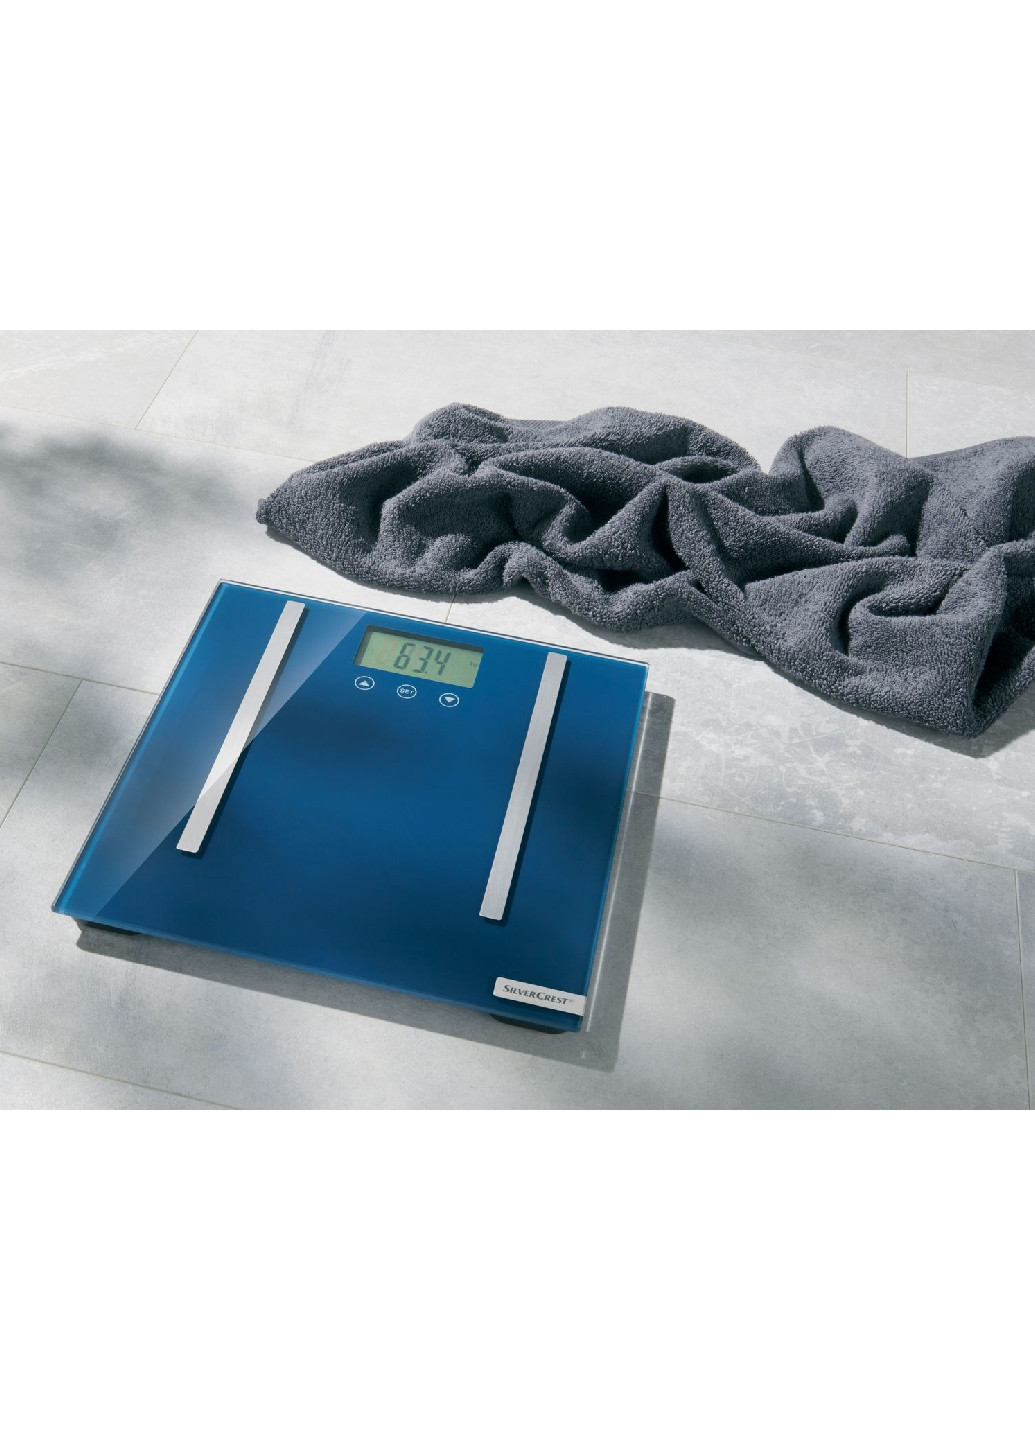 Диагностические стеклянные весы SPWD 180 G1 синие Silver Crest (262303096)